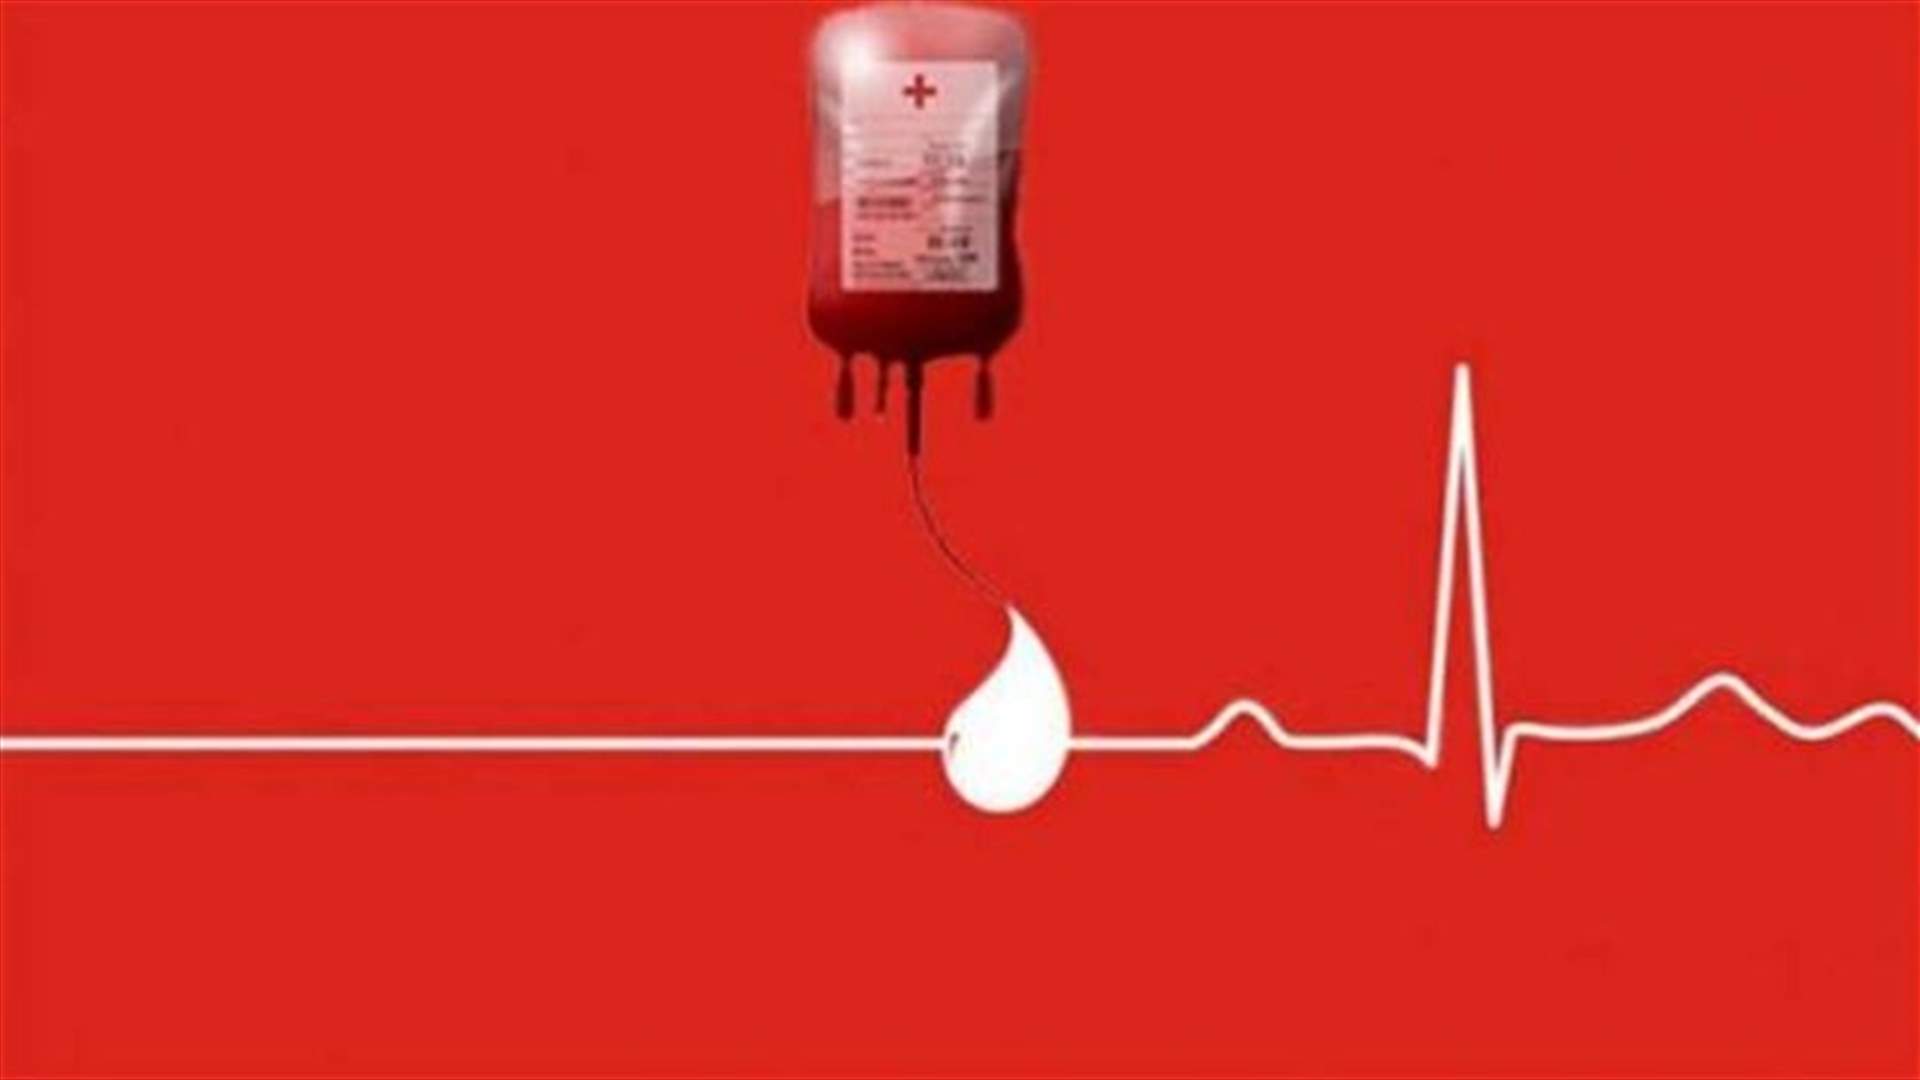 مريض في مستشفى الشرق الأوسط بحاجة ماسة الى دم من فئة -O ... للتبرع الاتصال على 71008141